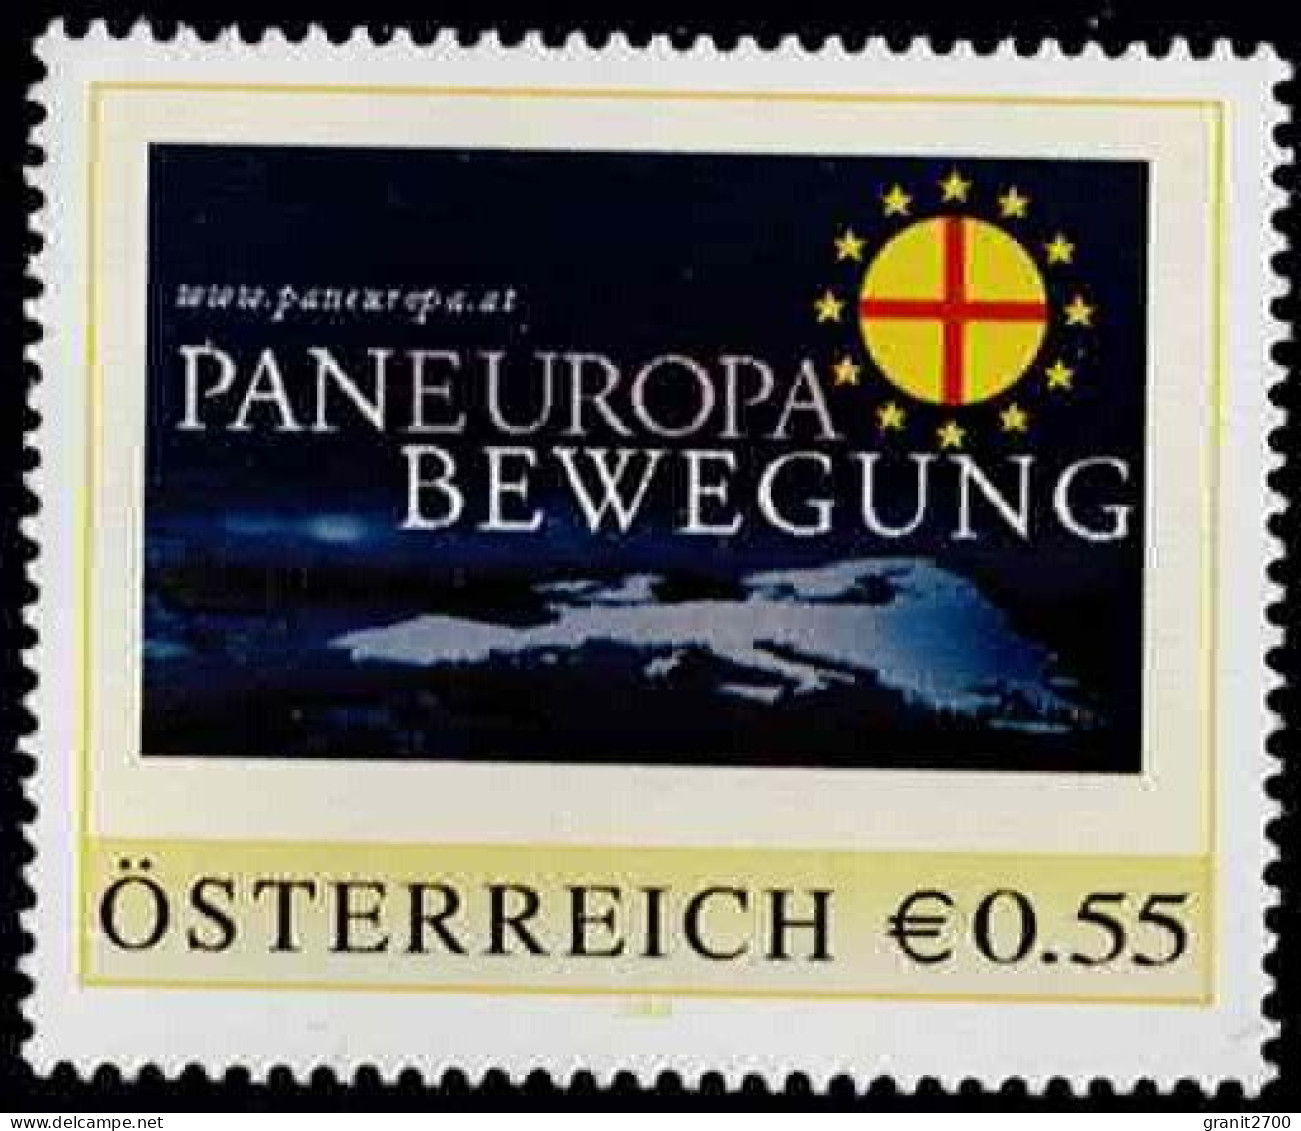 PM Paneuropa Bewegung  Postfrisch Ex Bogen Nr. 8006736 - Personalisierte Briefmarken